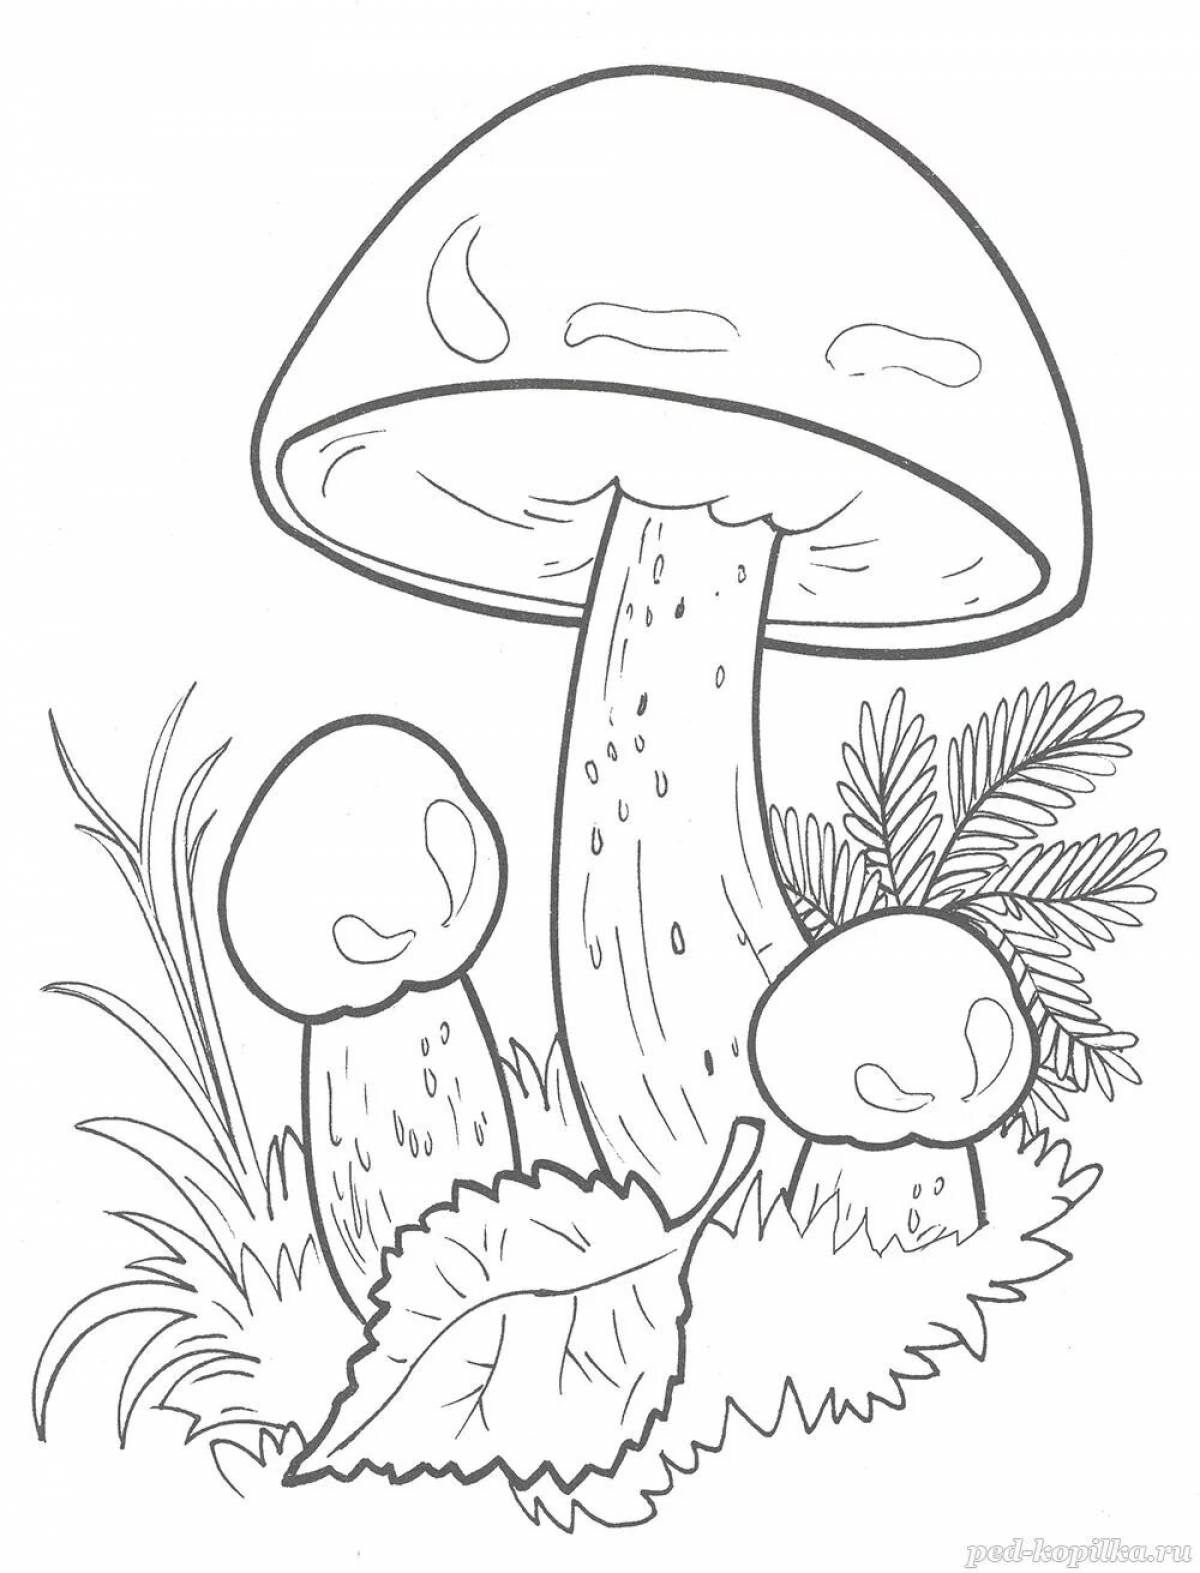 Живая раскраска грибов для детей 6-7 лет